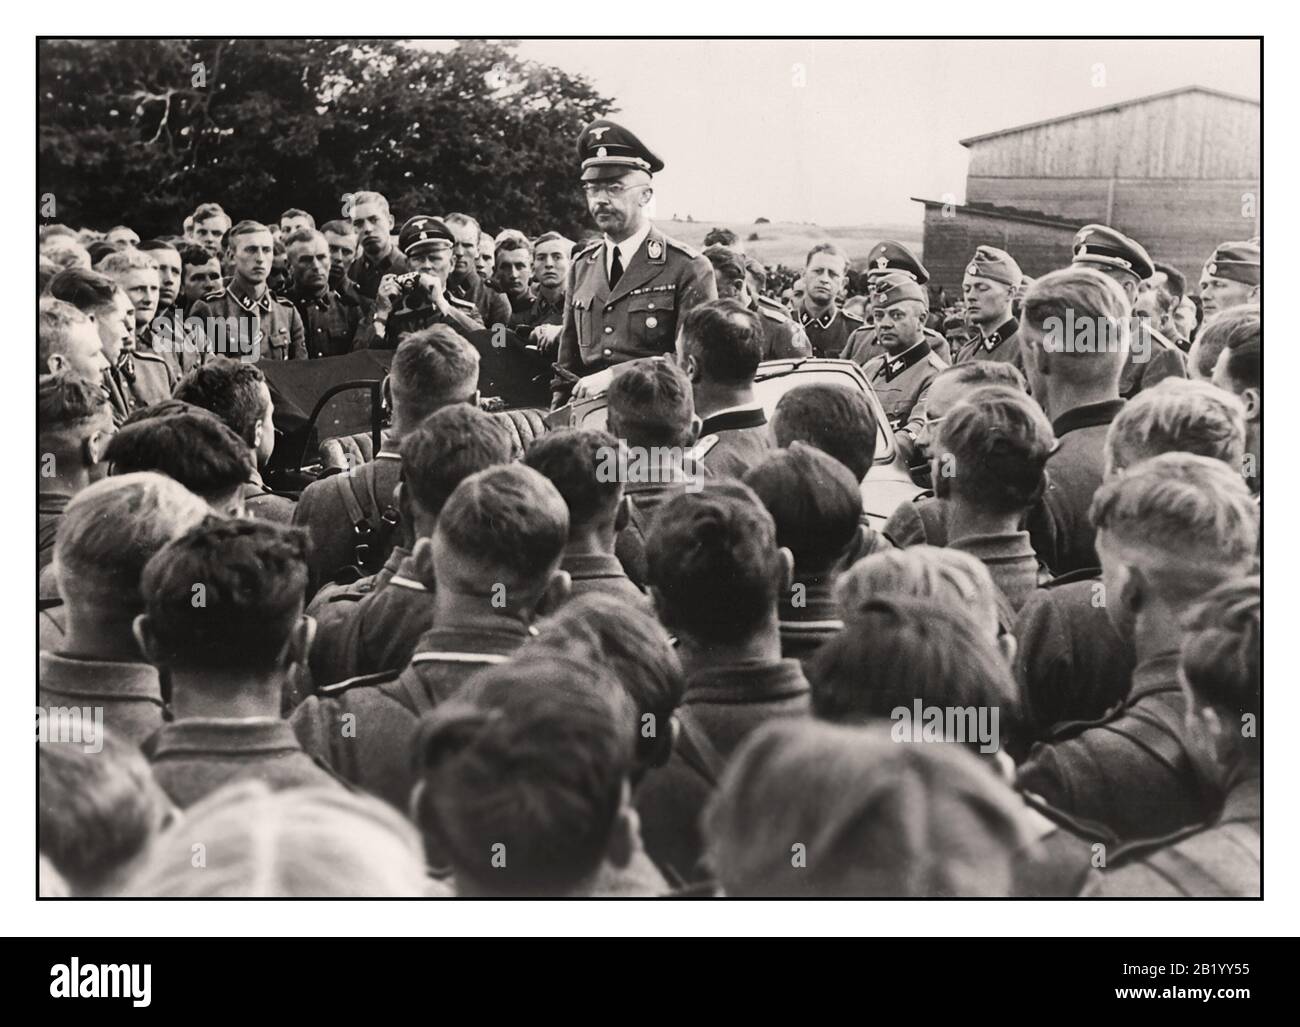 Vintage Nazi News Propaganda immagine di Reichsfuehrer-SS Heinrich Himmler rivolgendosi ad un gruppo di soldati in un reggimento di cavalleria del Waffen SS nei territori orientali Polonia. Seconda Guerra Mondiale WW2 1940's. Foto Stock